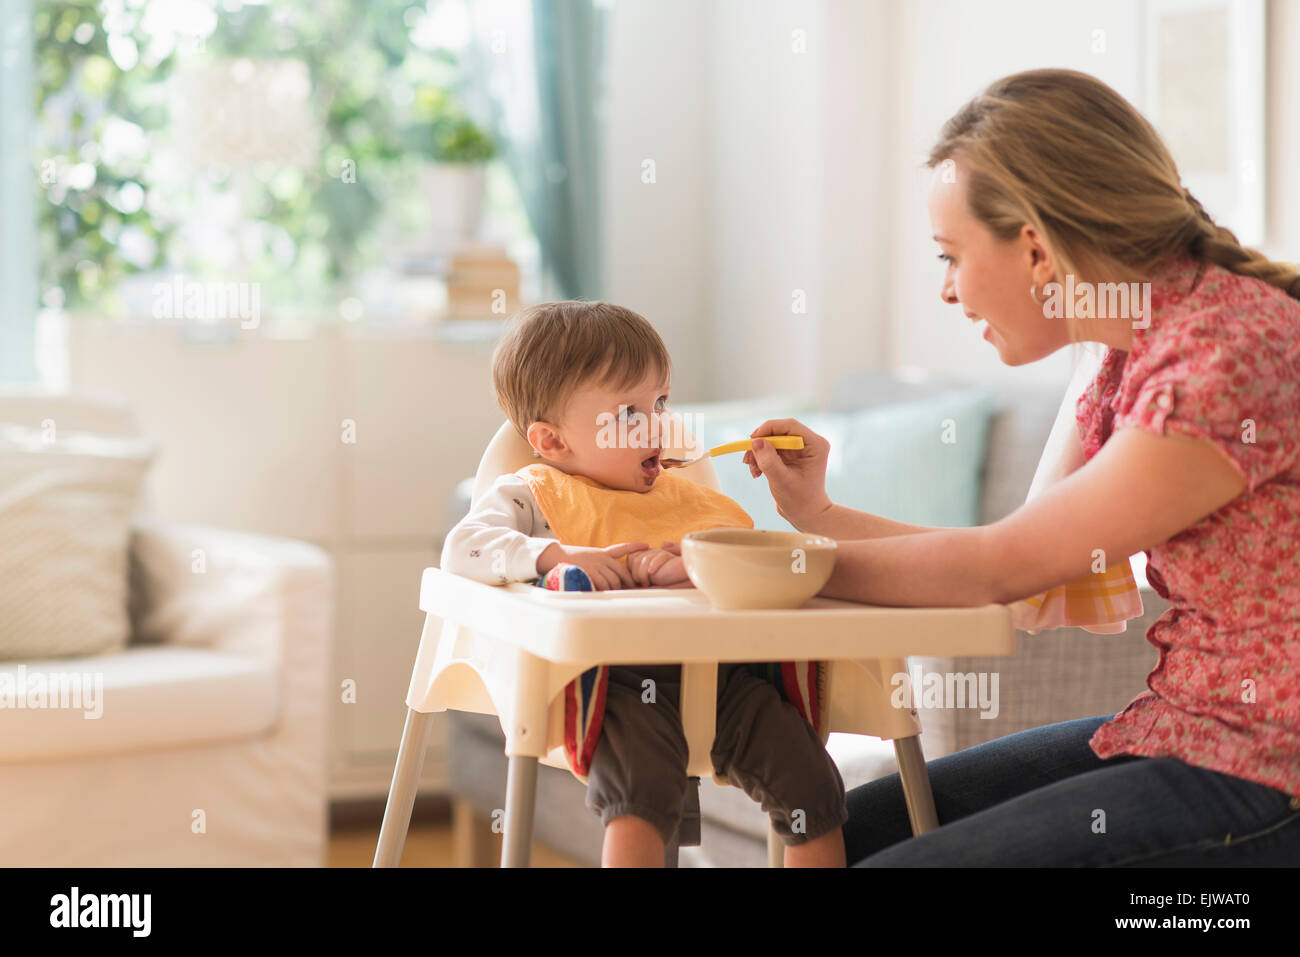 Madre alimentando niño (2-3 años) en silla alta Foto de stock